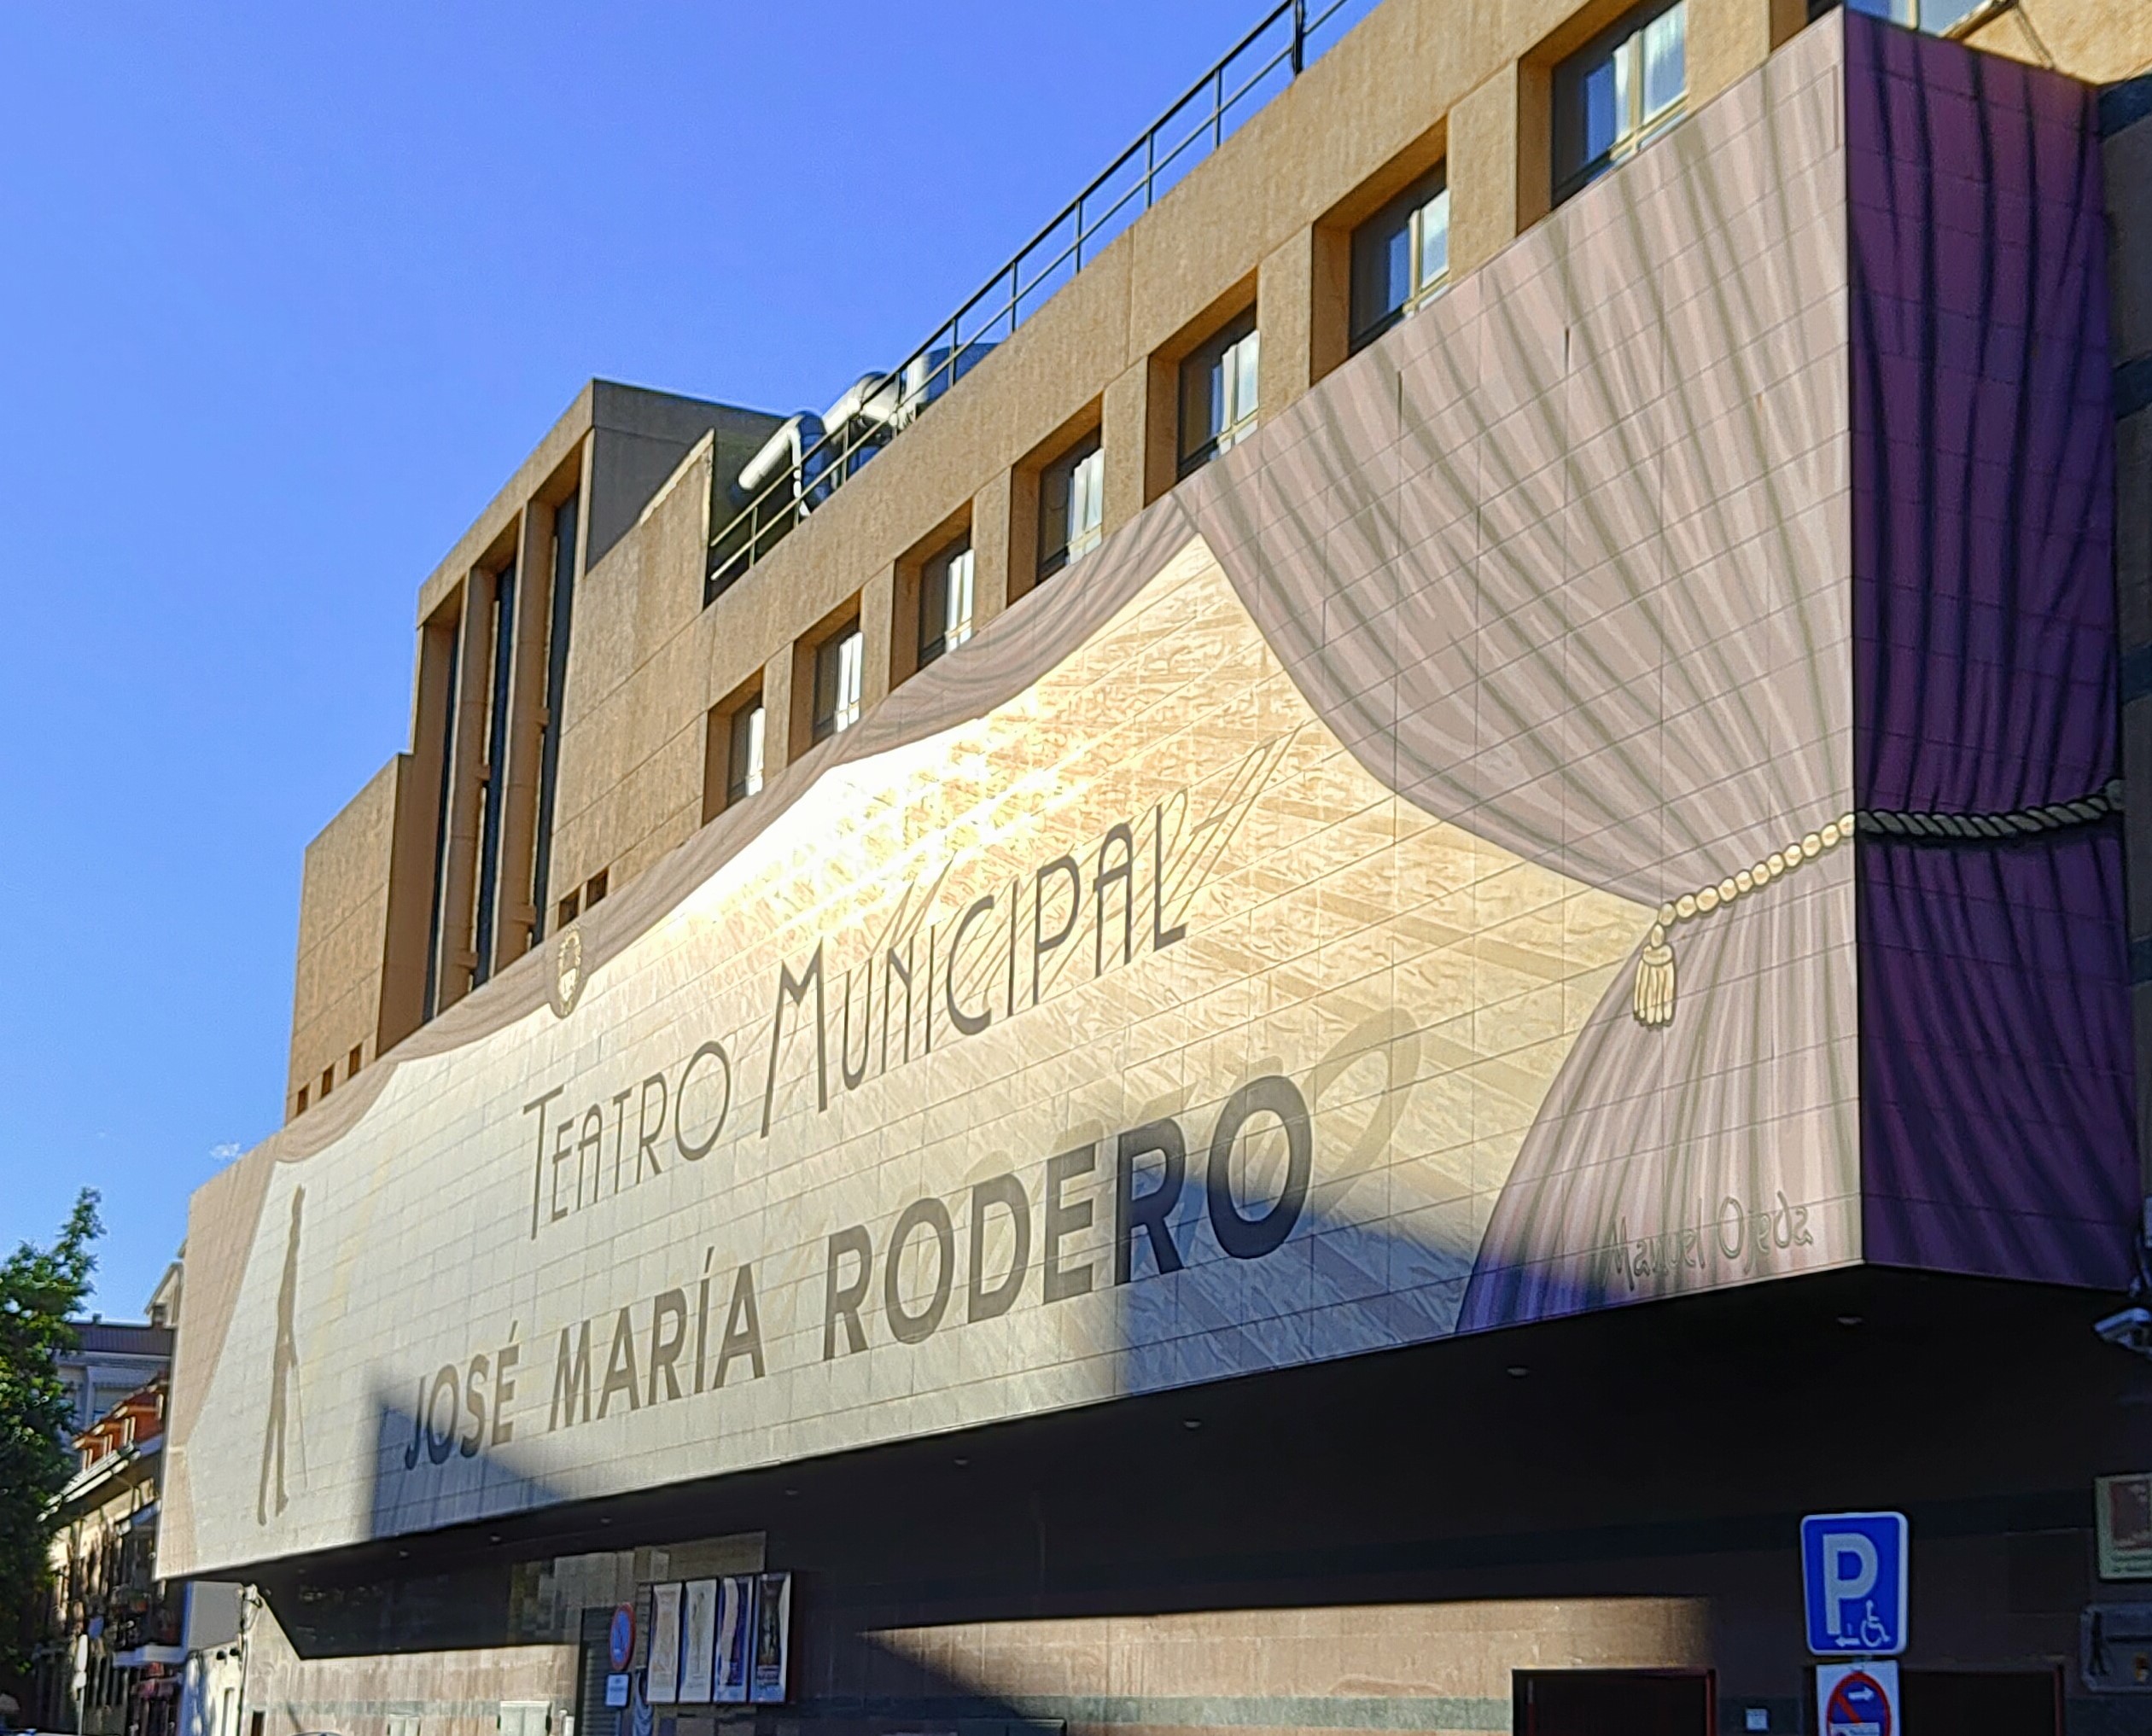 Teatro Jose Maria Rodero